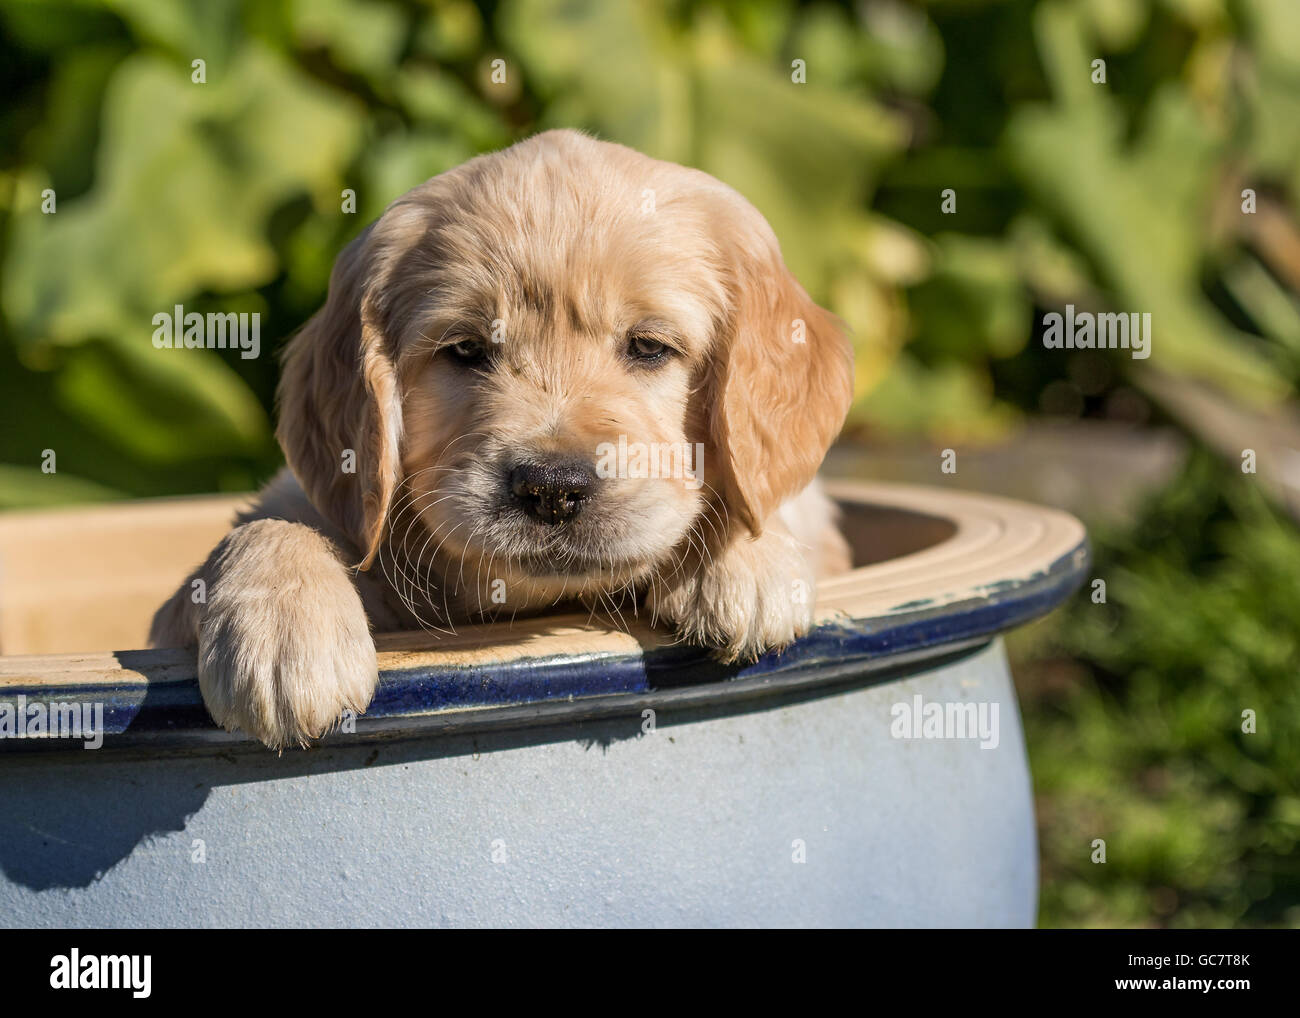 Golden Retriever cuccioli in una ciotola in un giardino Foto Stock